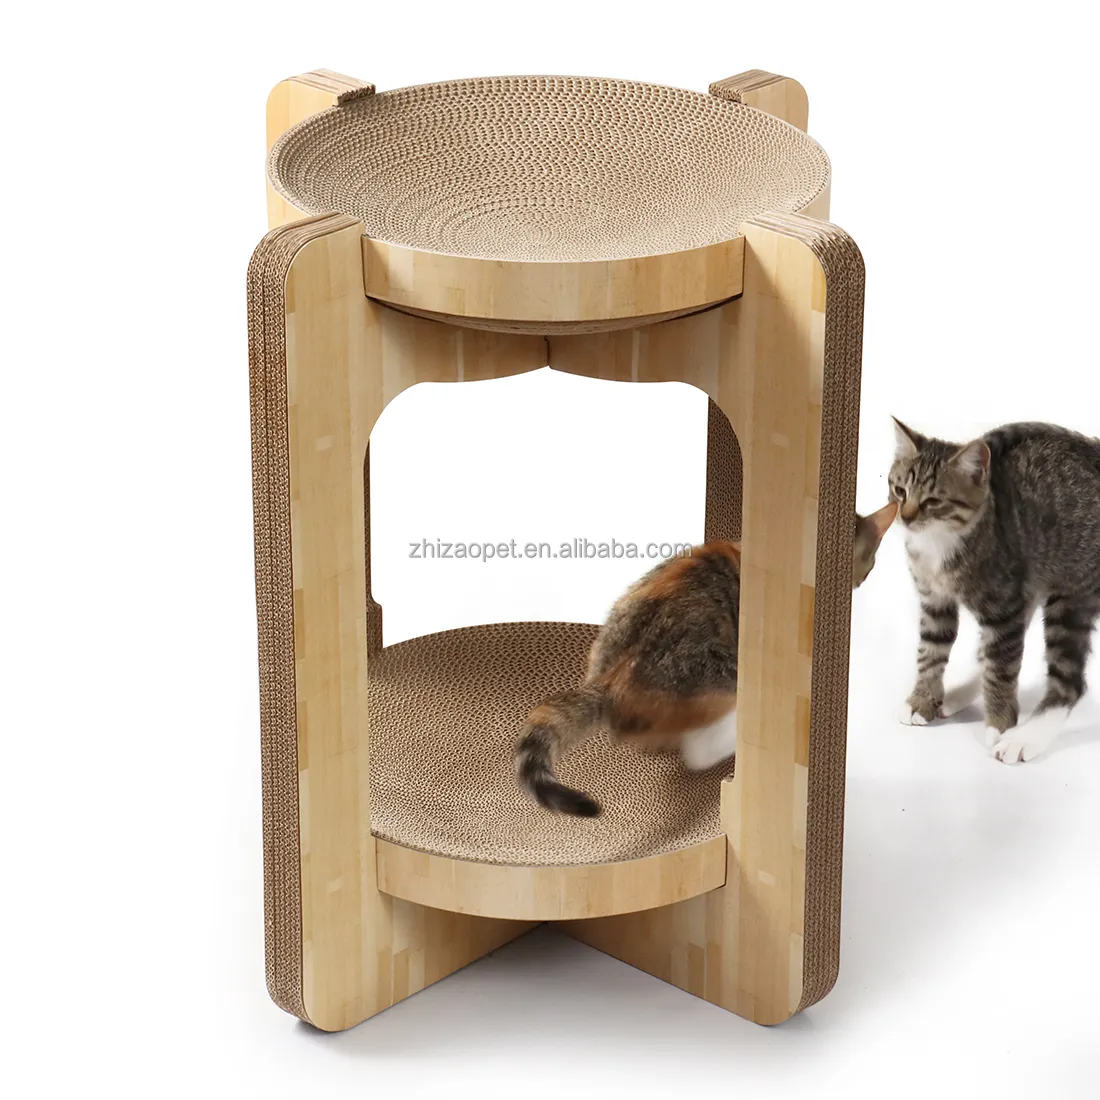 החלפת עיצוב פטנט חדש משטח גירוד כפול שכבה חתול מגרד עץ מגדל